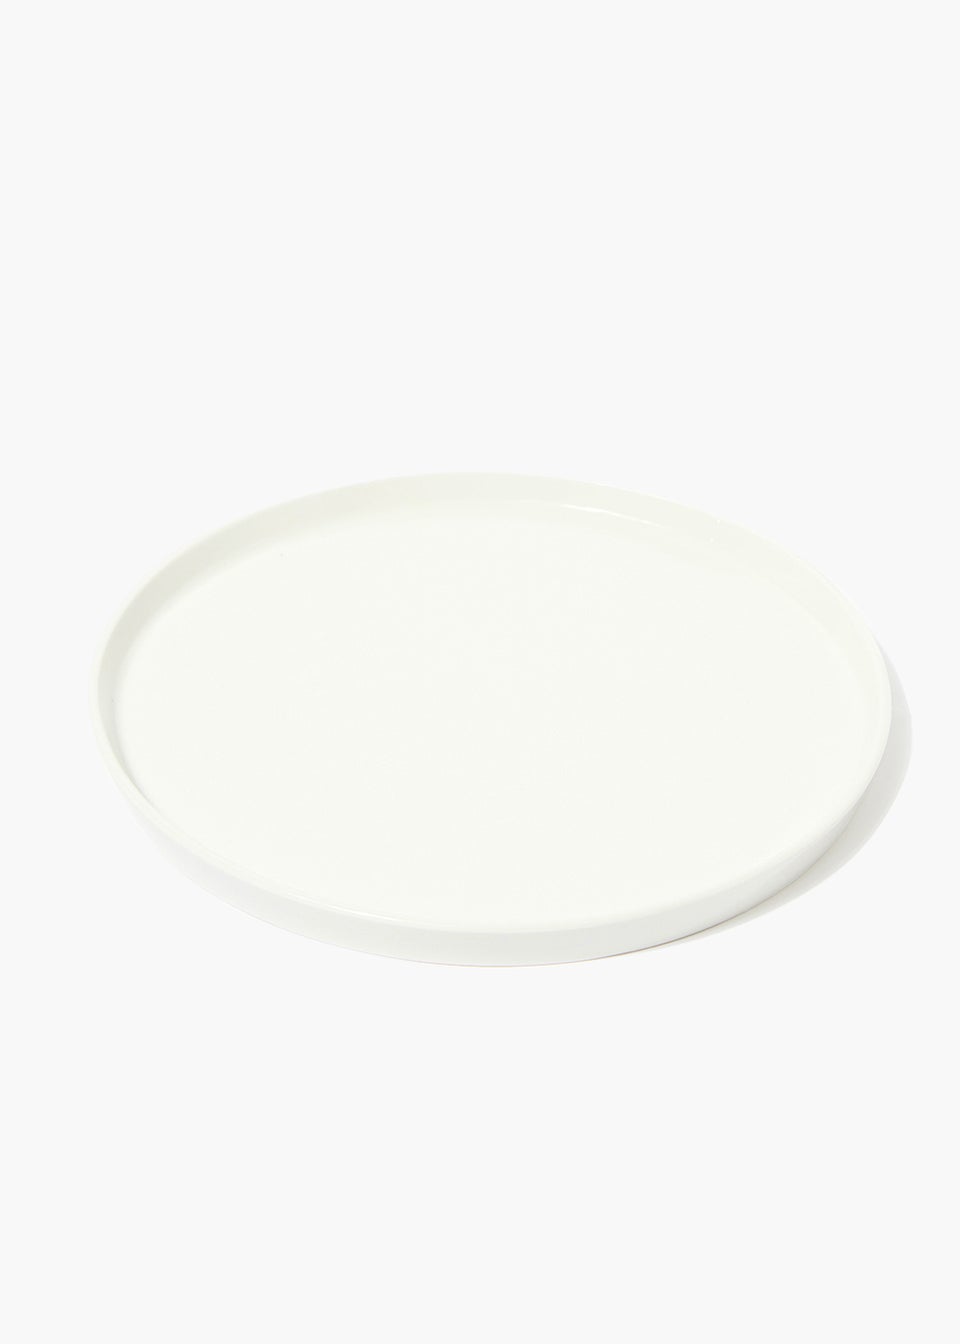 White Lipped Dinner Plate (26cm x 26cm)